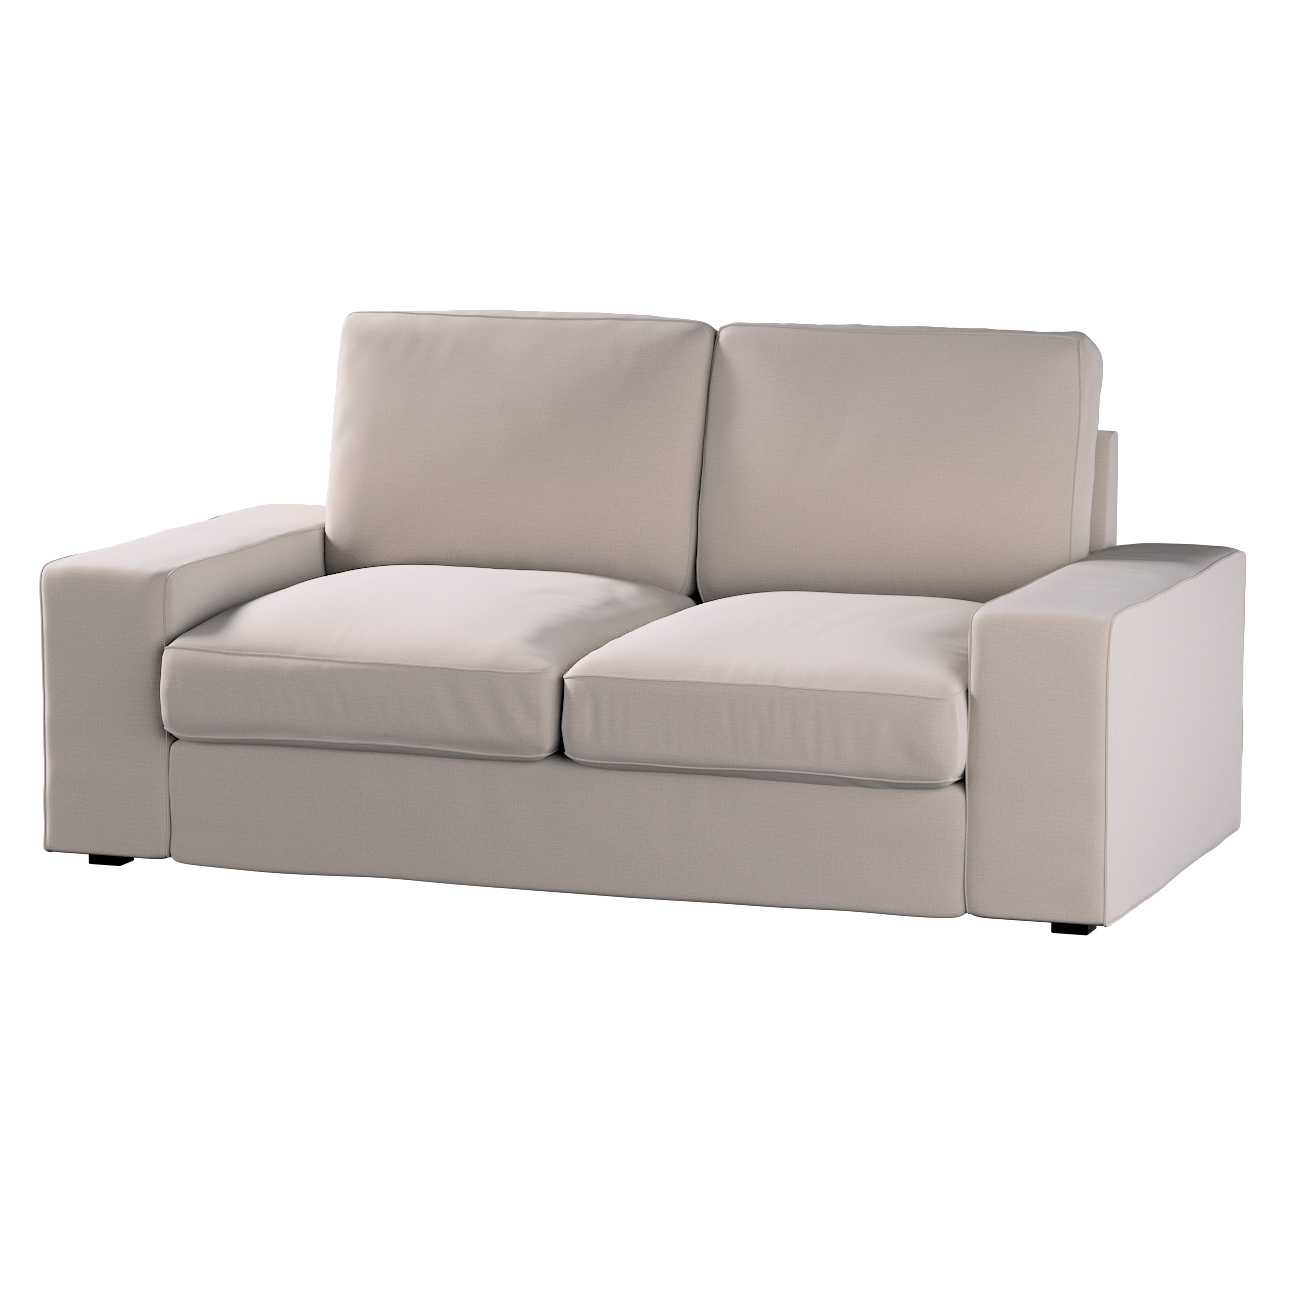 Bezug für Kivik 2-Sitzer Sofa, beige, Bezug für Sofa Kivik 2-Sitzer, Ingrid günstig online kaufen